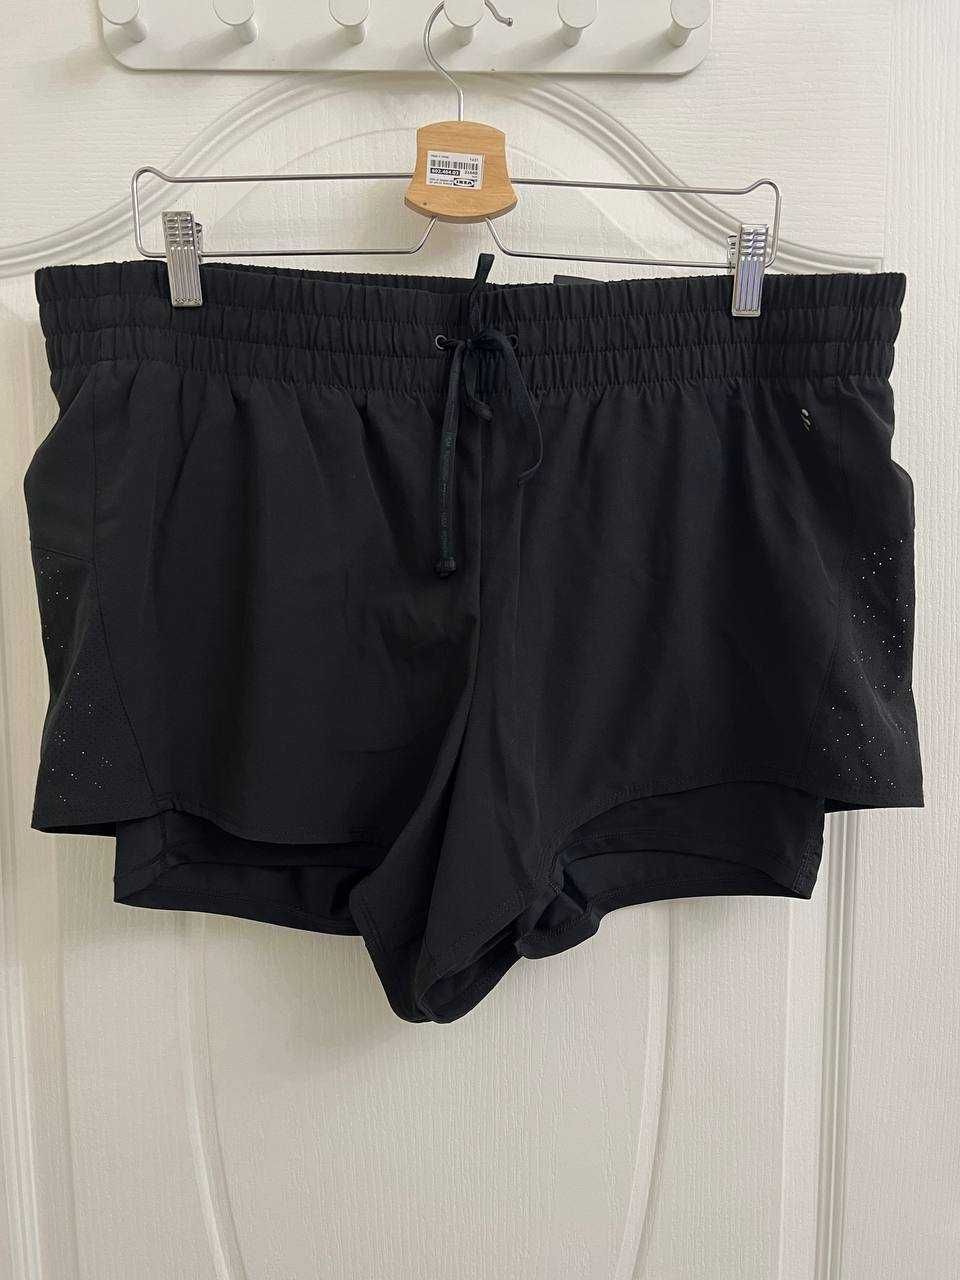 Новые спортивные шорты H&M DryMove, размер XL  (54/58)